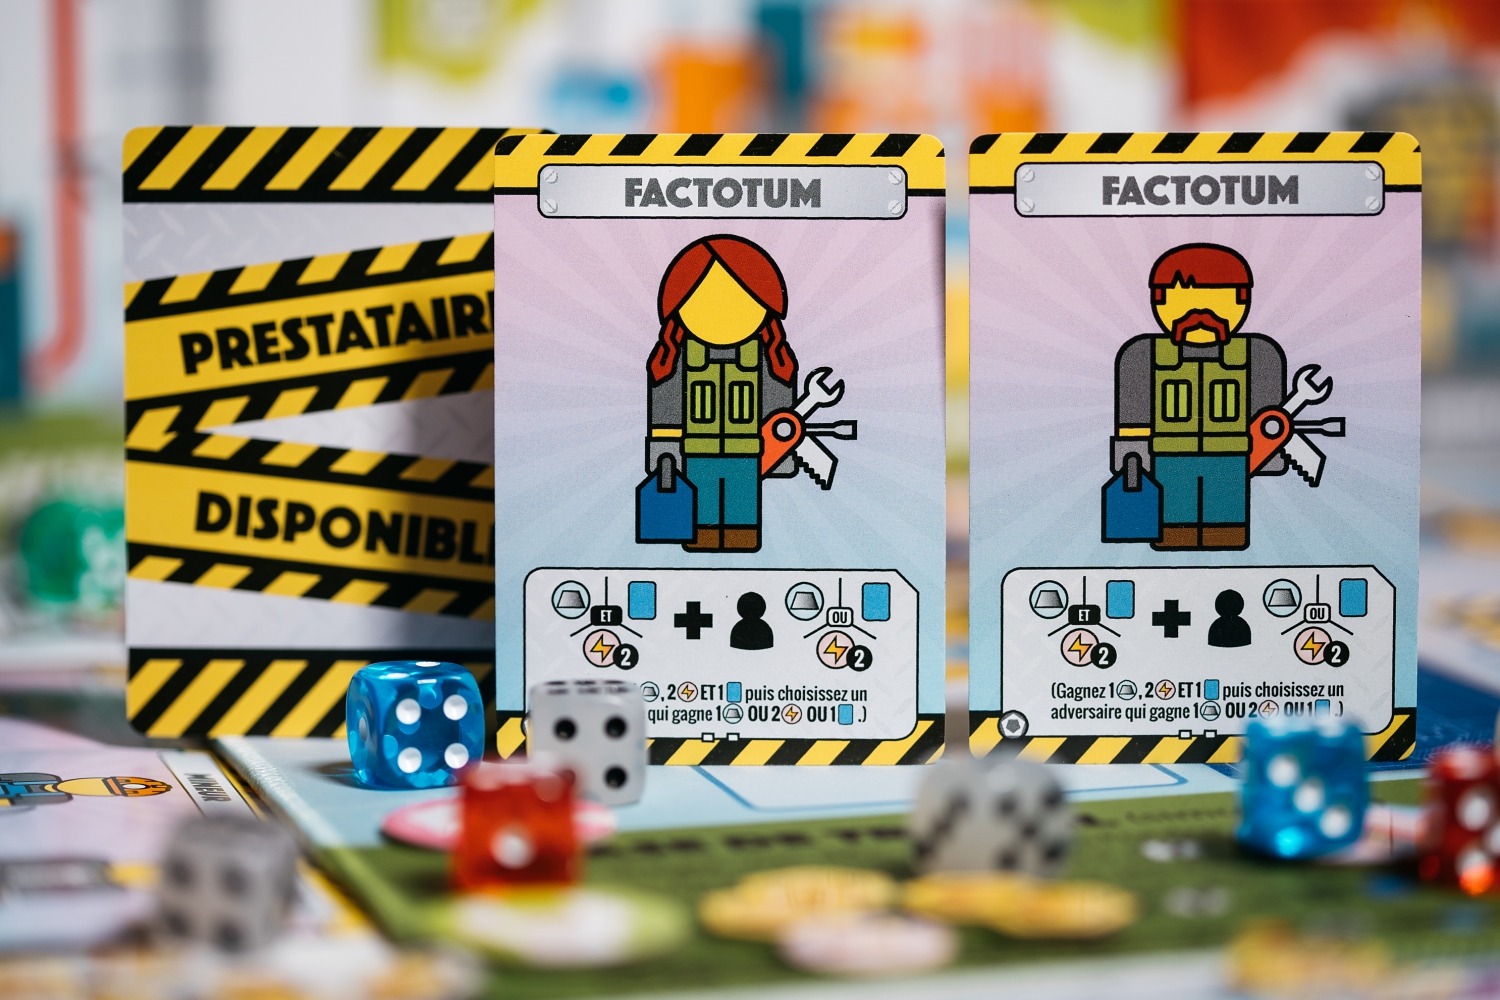 fantastic factories lucky duck games jeu de société boardgame